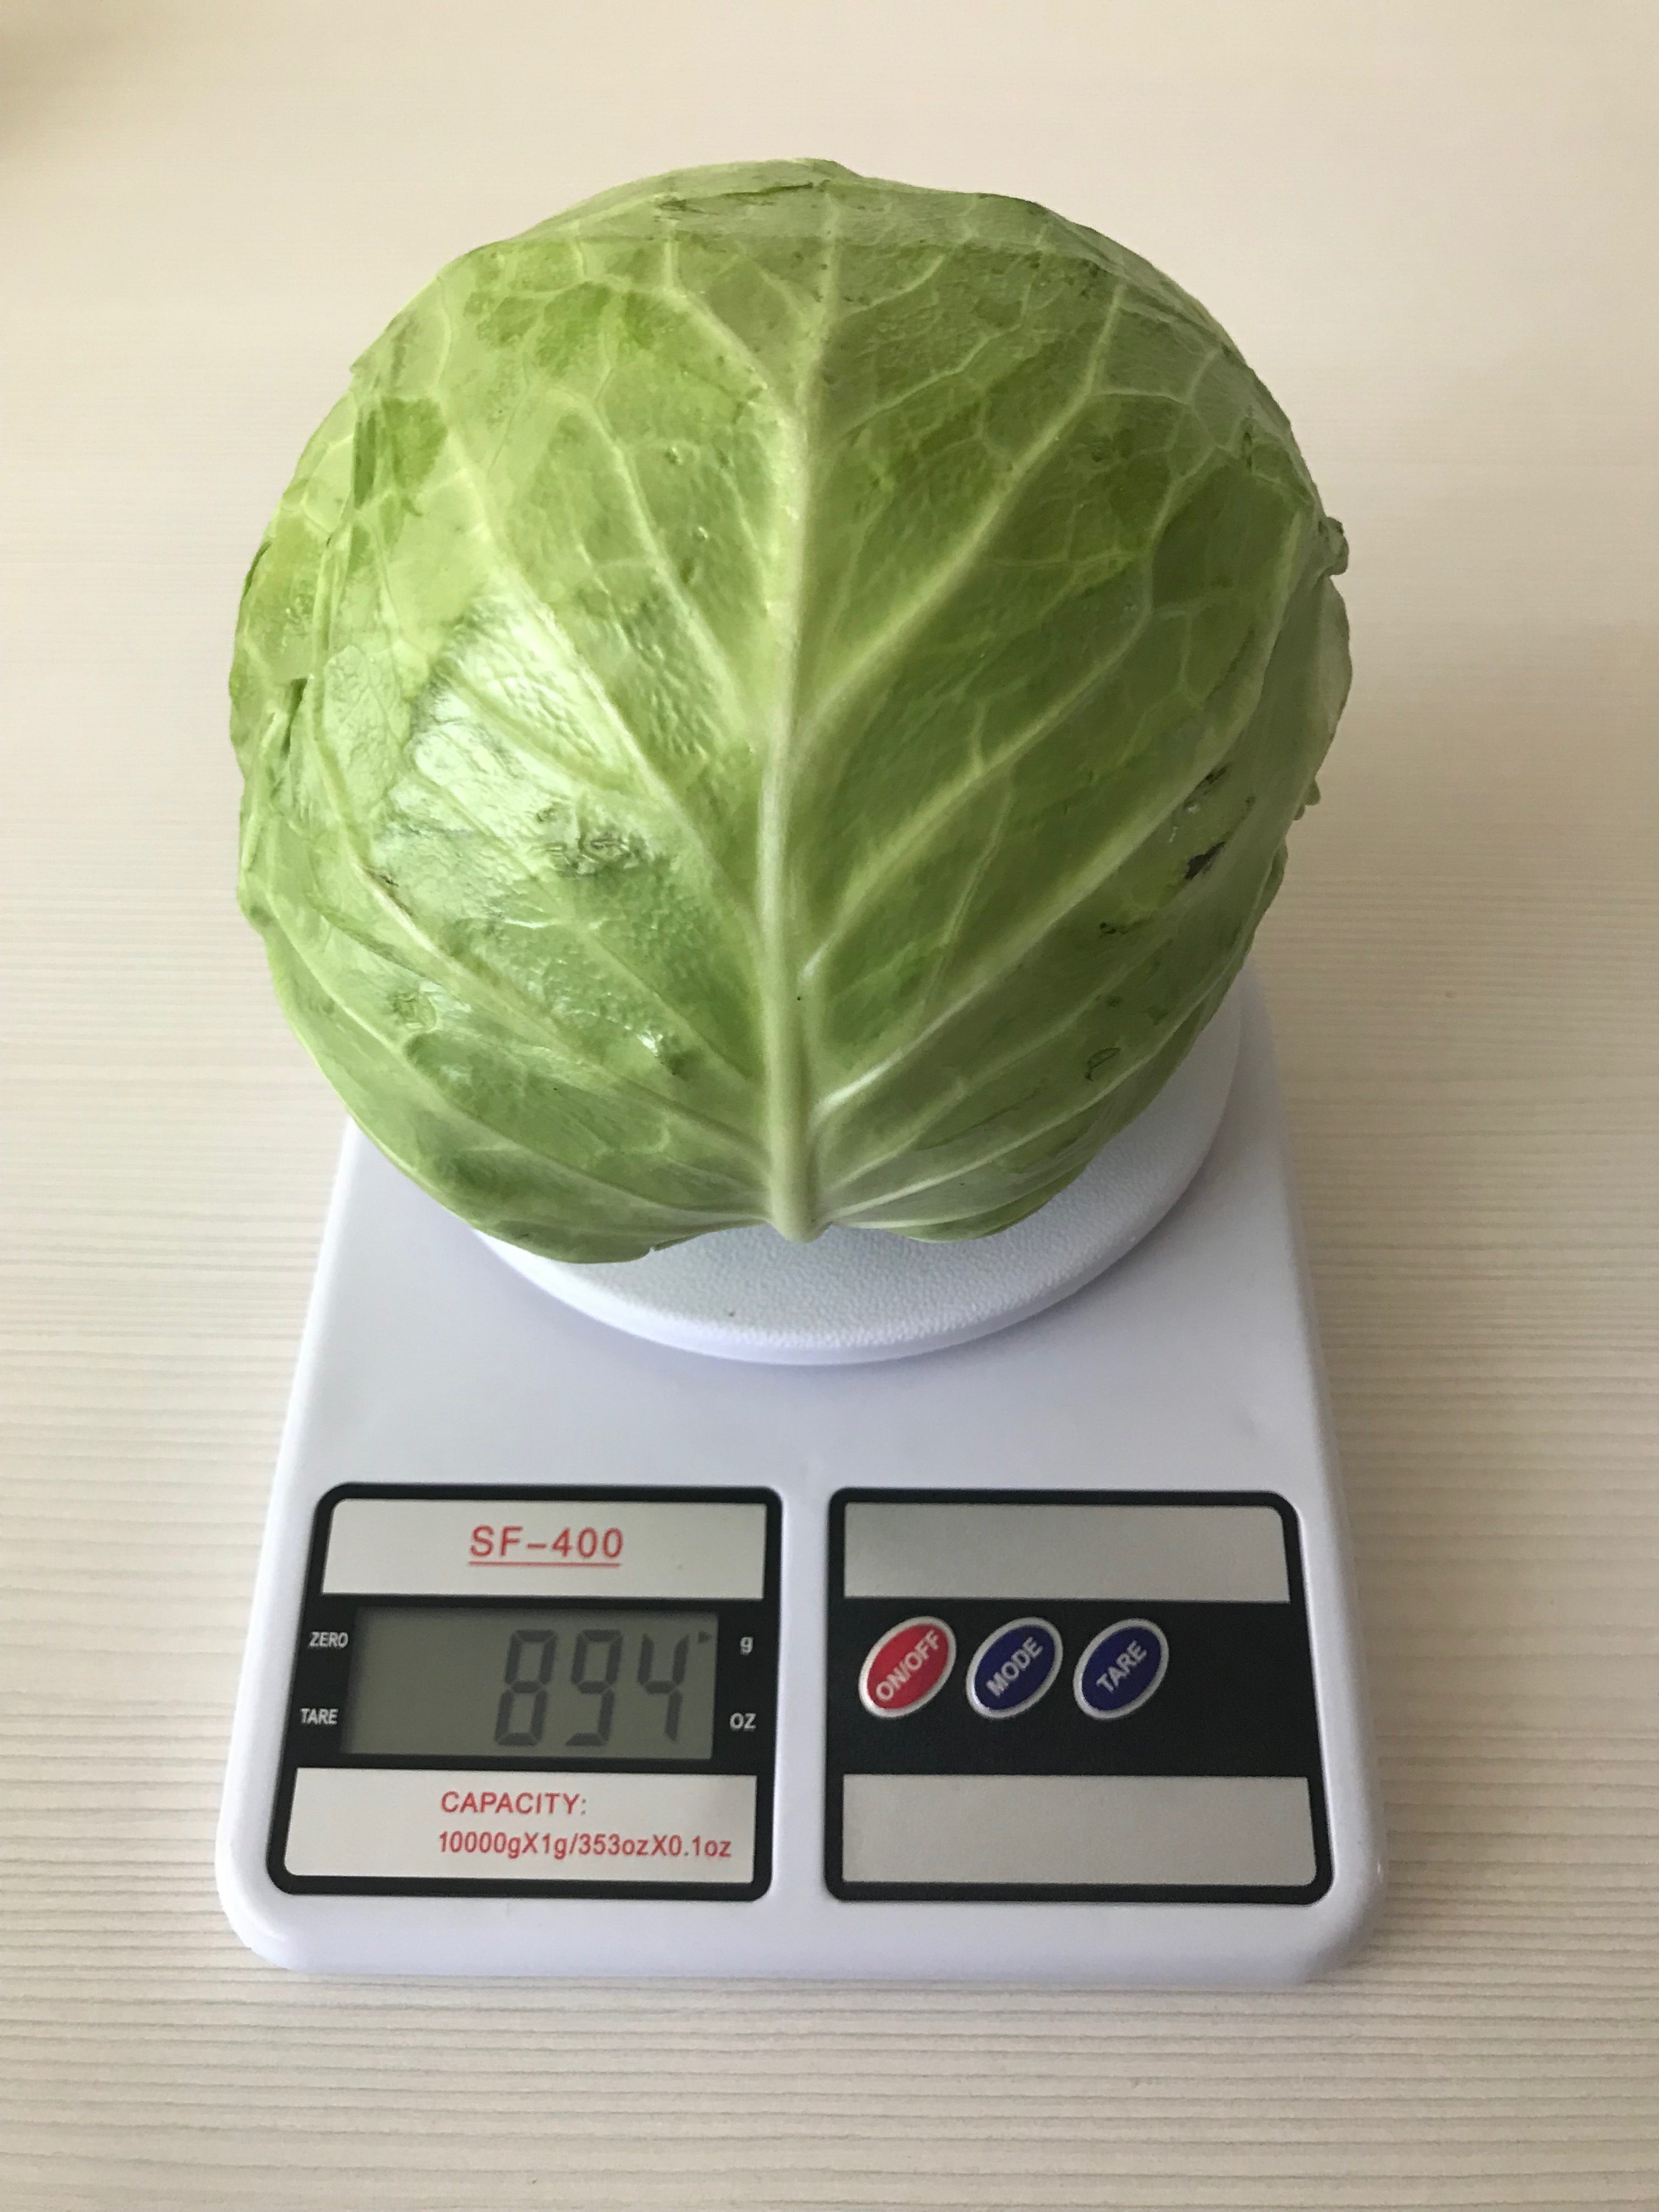 一棵卷心菜（中等大小）有多重？